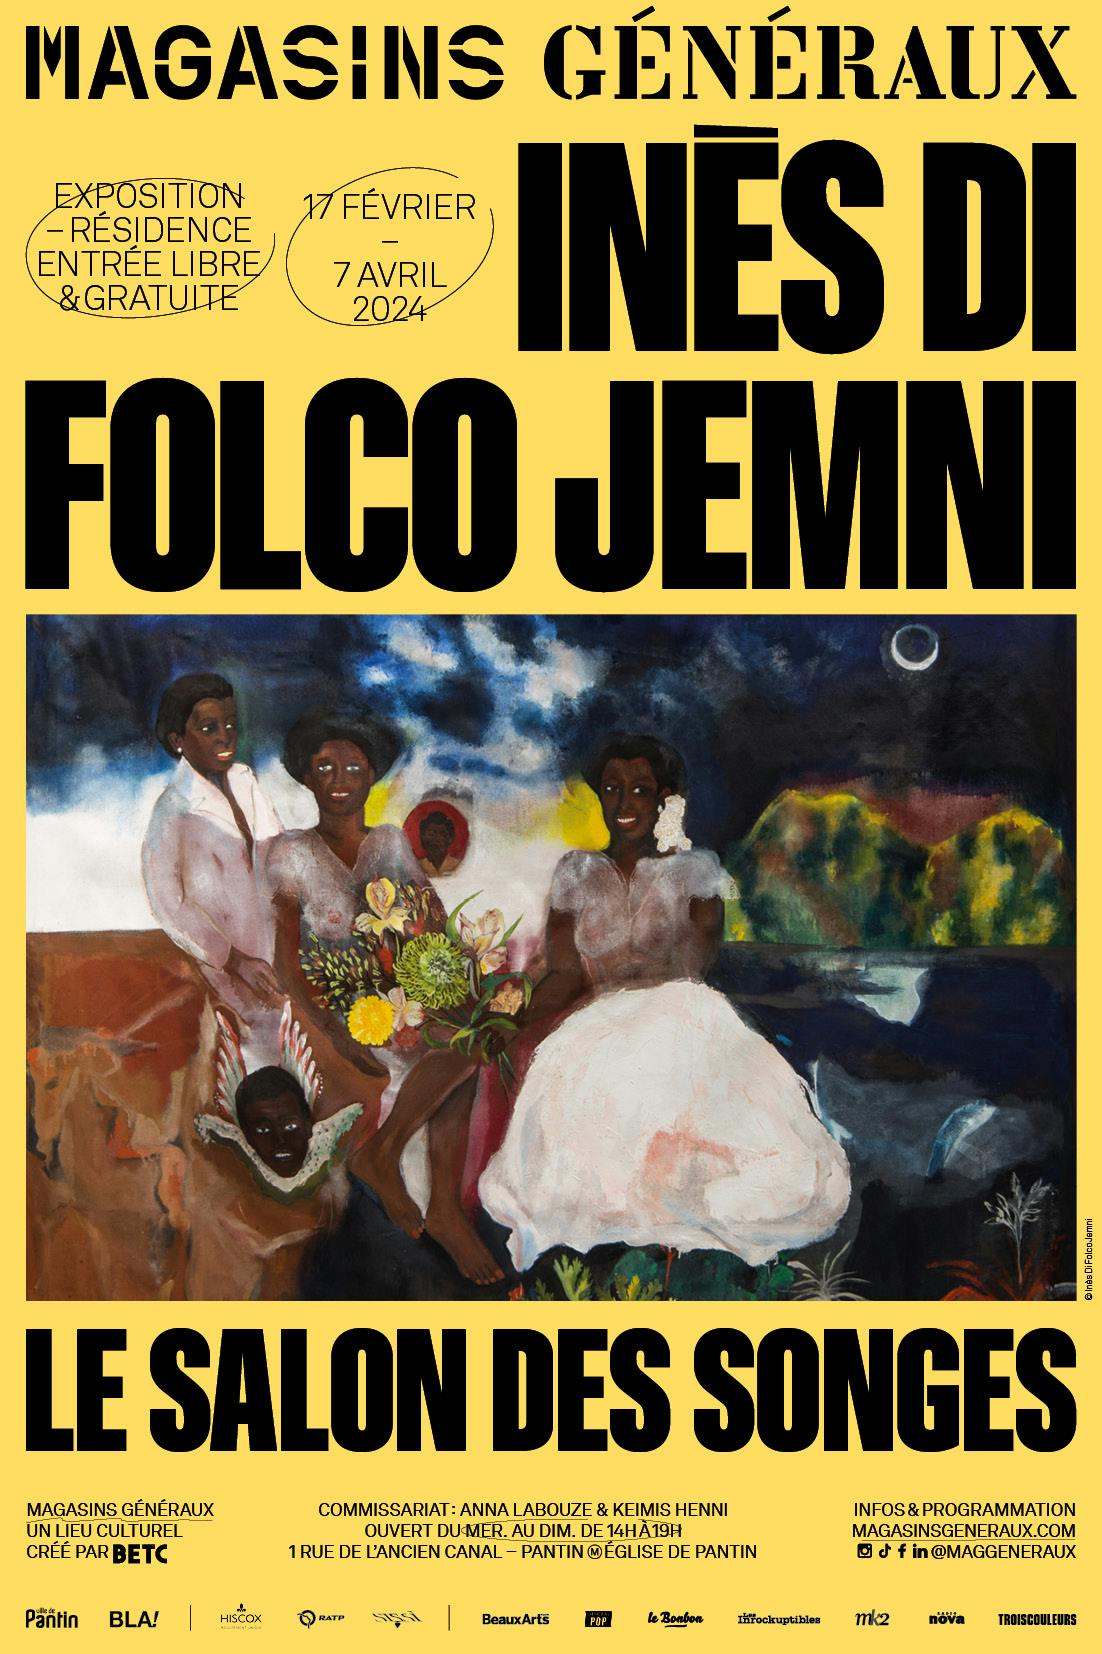 Le Salon des songes, Inès Di Folco Jemni, contemporary art, exhibition, residency, artist, painting, Magasins Généraux, Pantin 